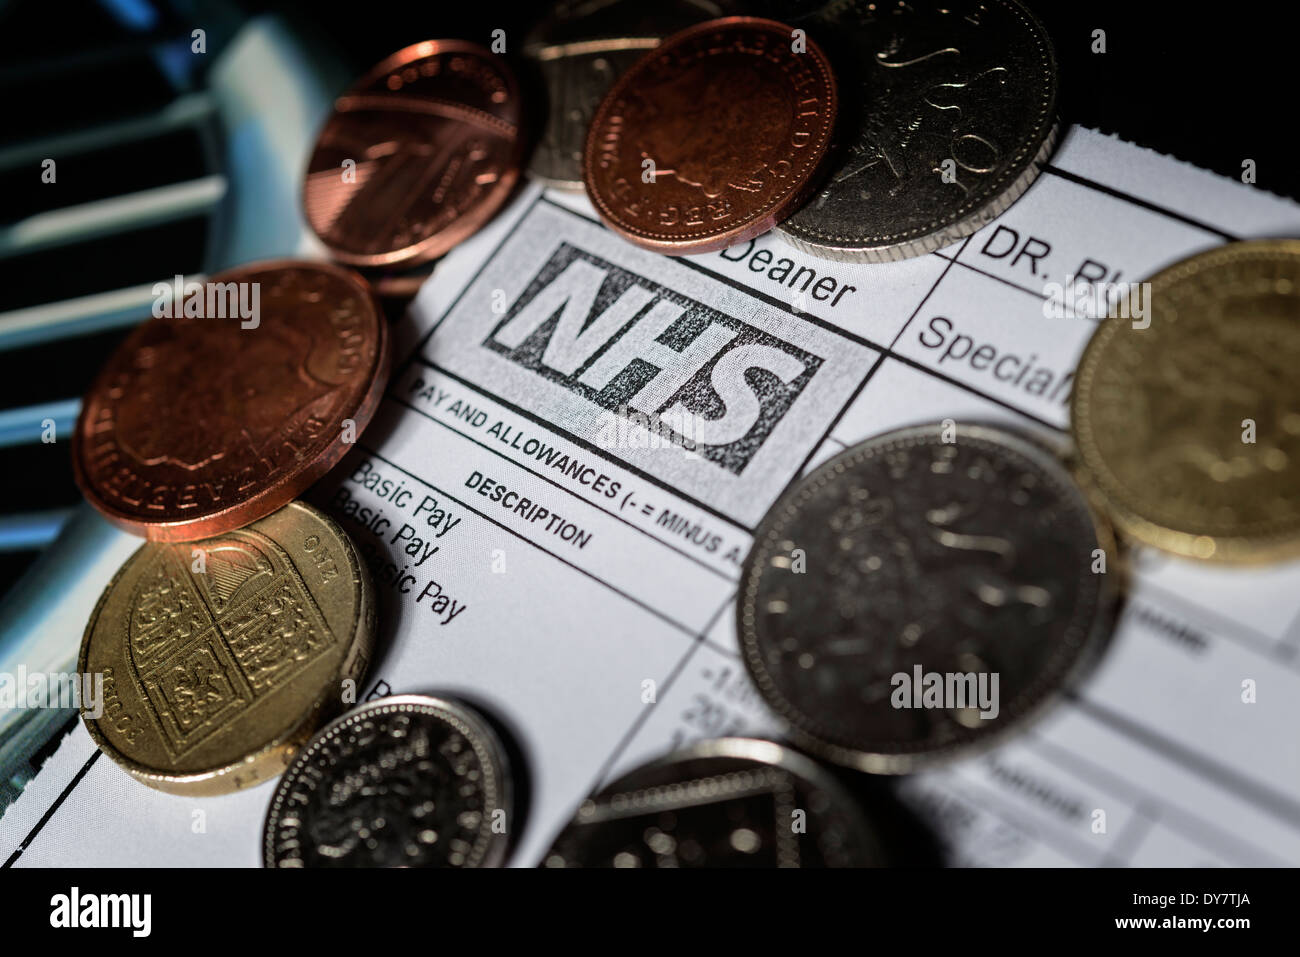 NHS bezahlen Zurückhaltung Konzept - eines Arztes NHS Gehaltsabrechnung mit Münzen auf ein medizinisches Lehrbuch. Zahlen und Vertrag Gespräche. Stockfoto